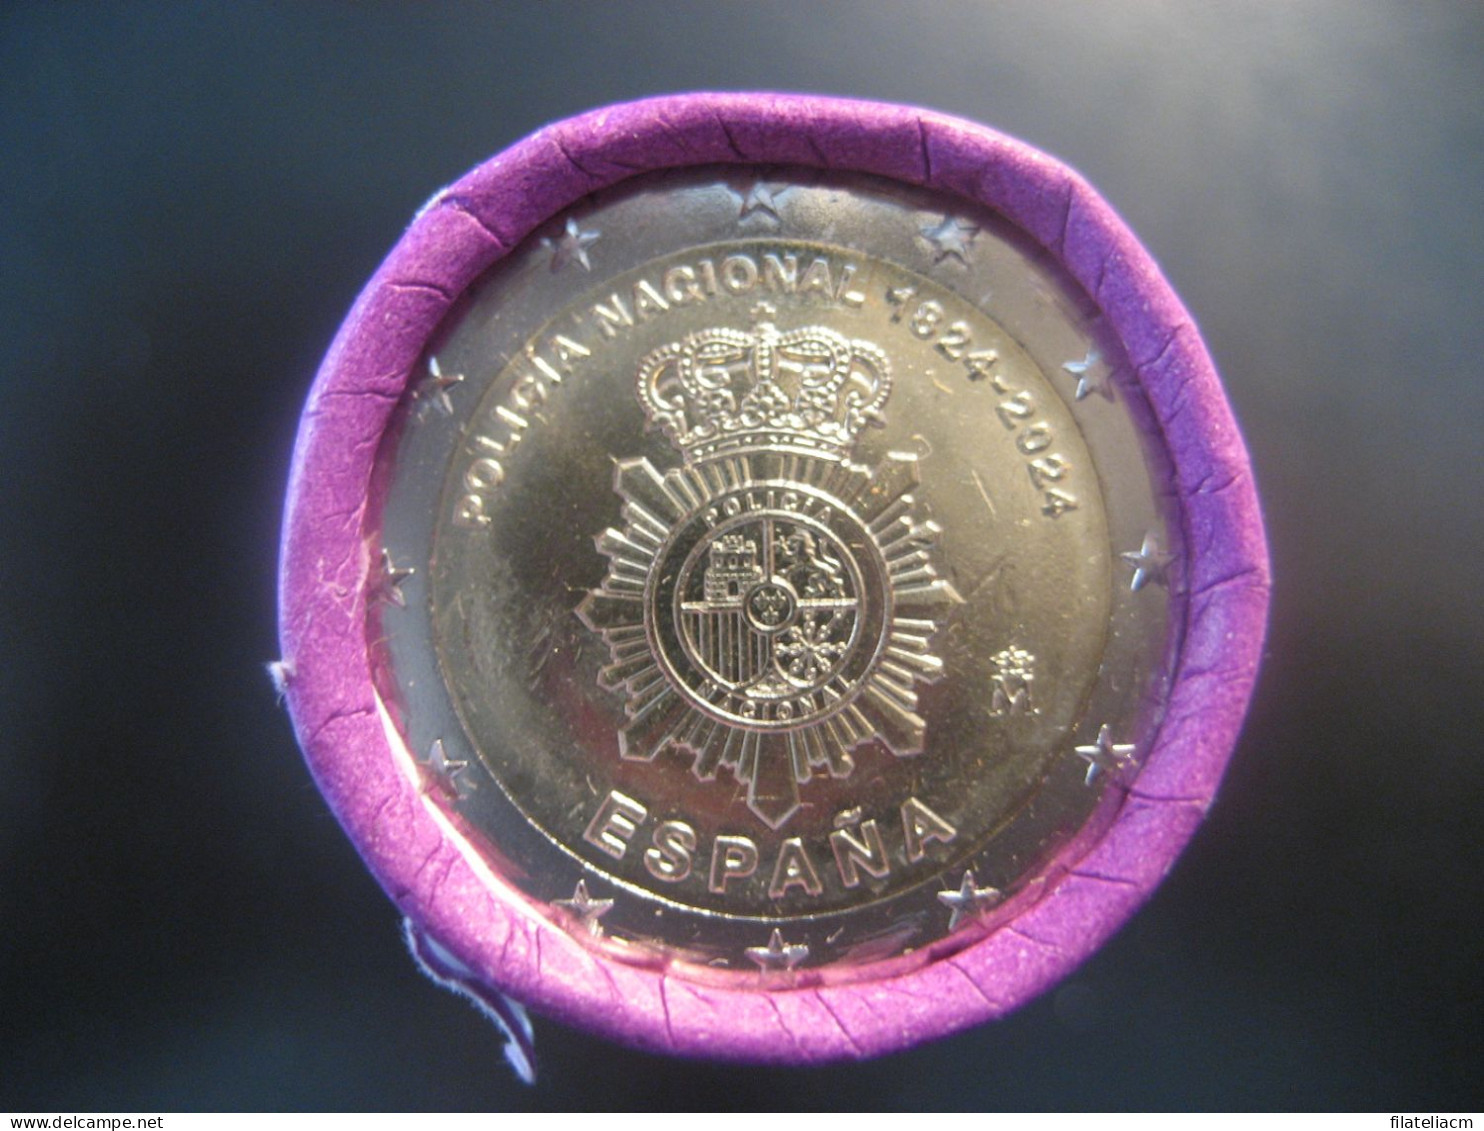 2 EUR 2024 SPAIN Policia Nacional POLICE Uncirculated From Cartridge Euro Coin - España